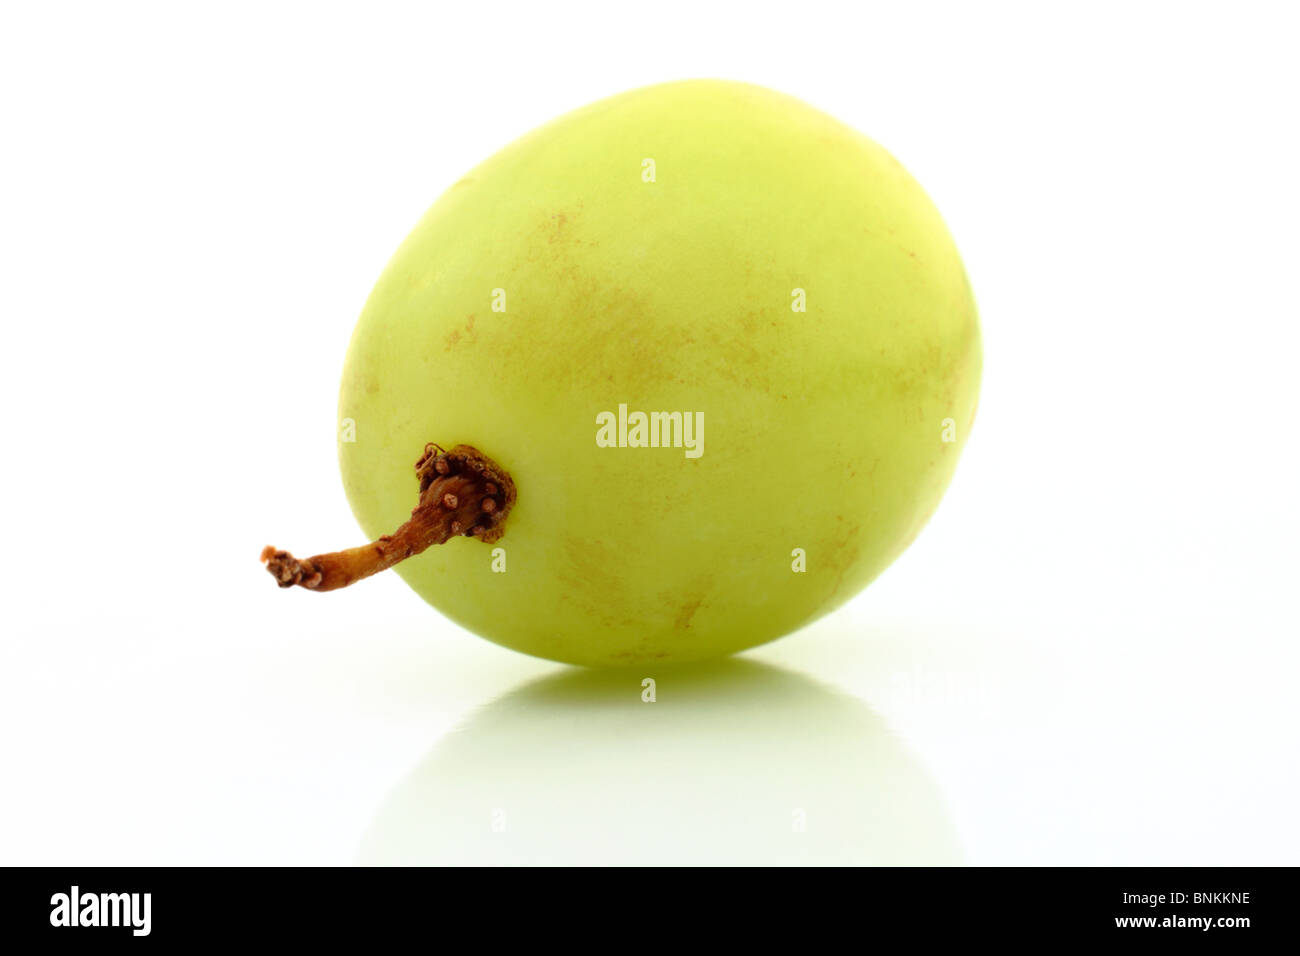 Chicco d'uva immagini e fotografie stock ad alta risoluzione - Alamy